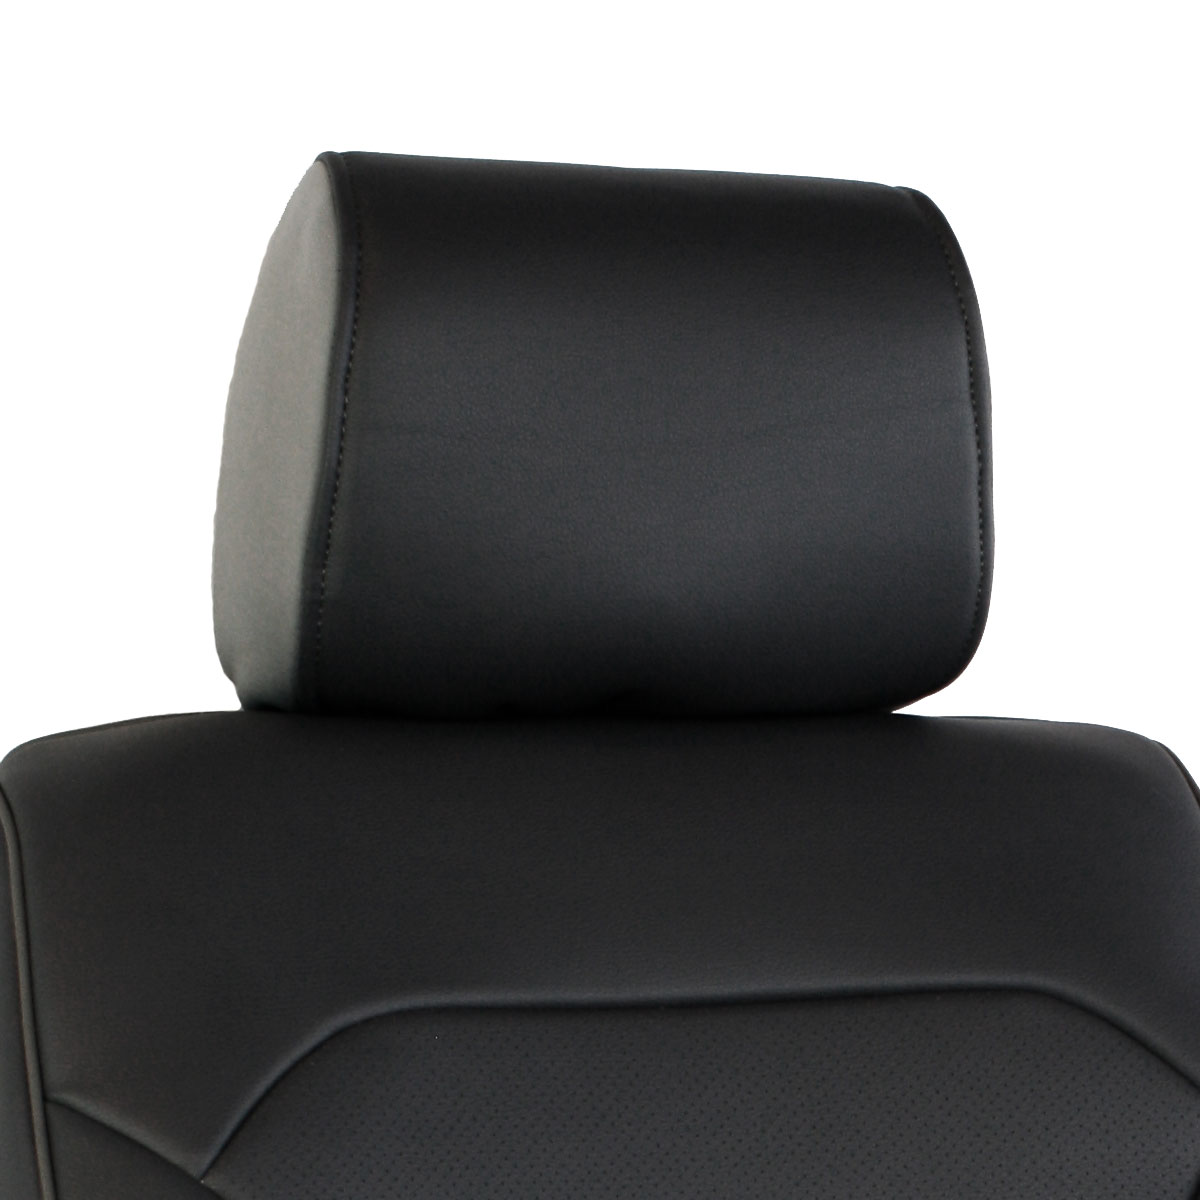 https://autohq.com/images/products/leatherette-blackblack-headrest.jpg